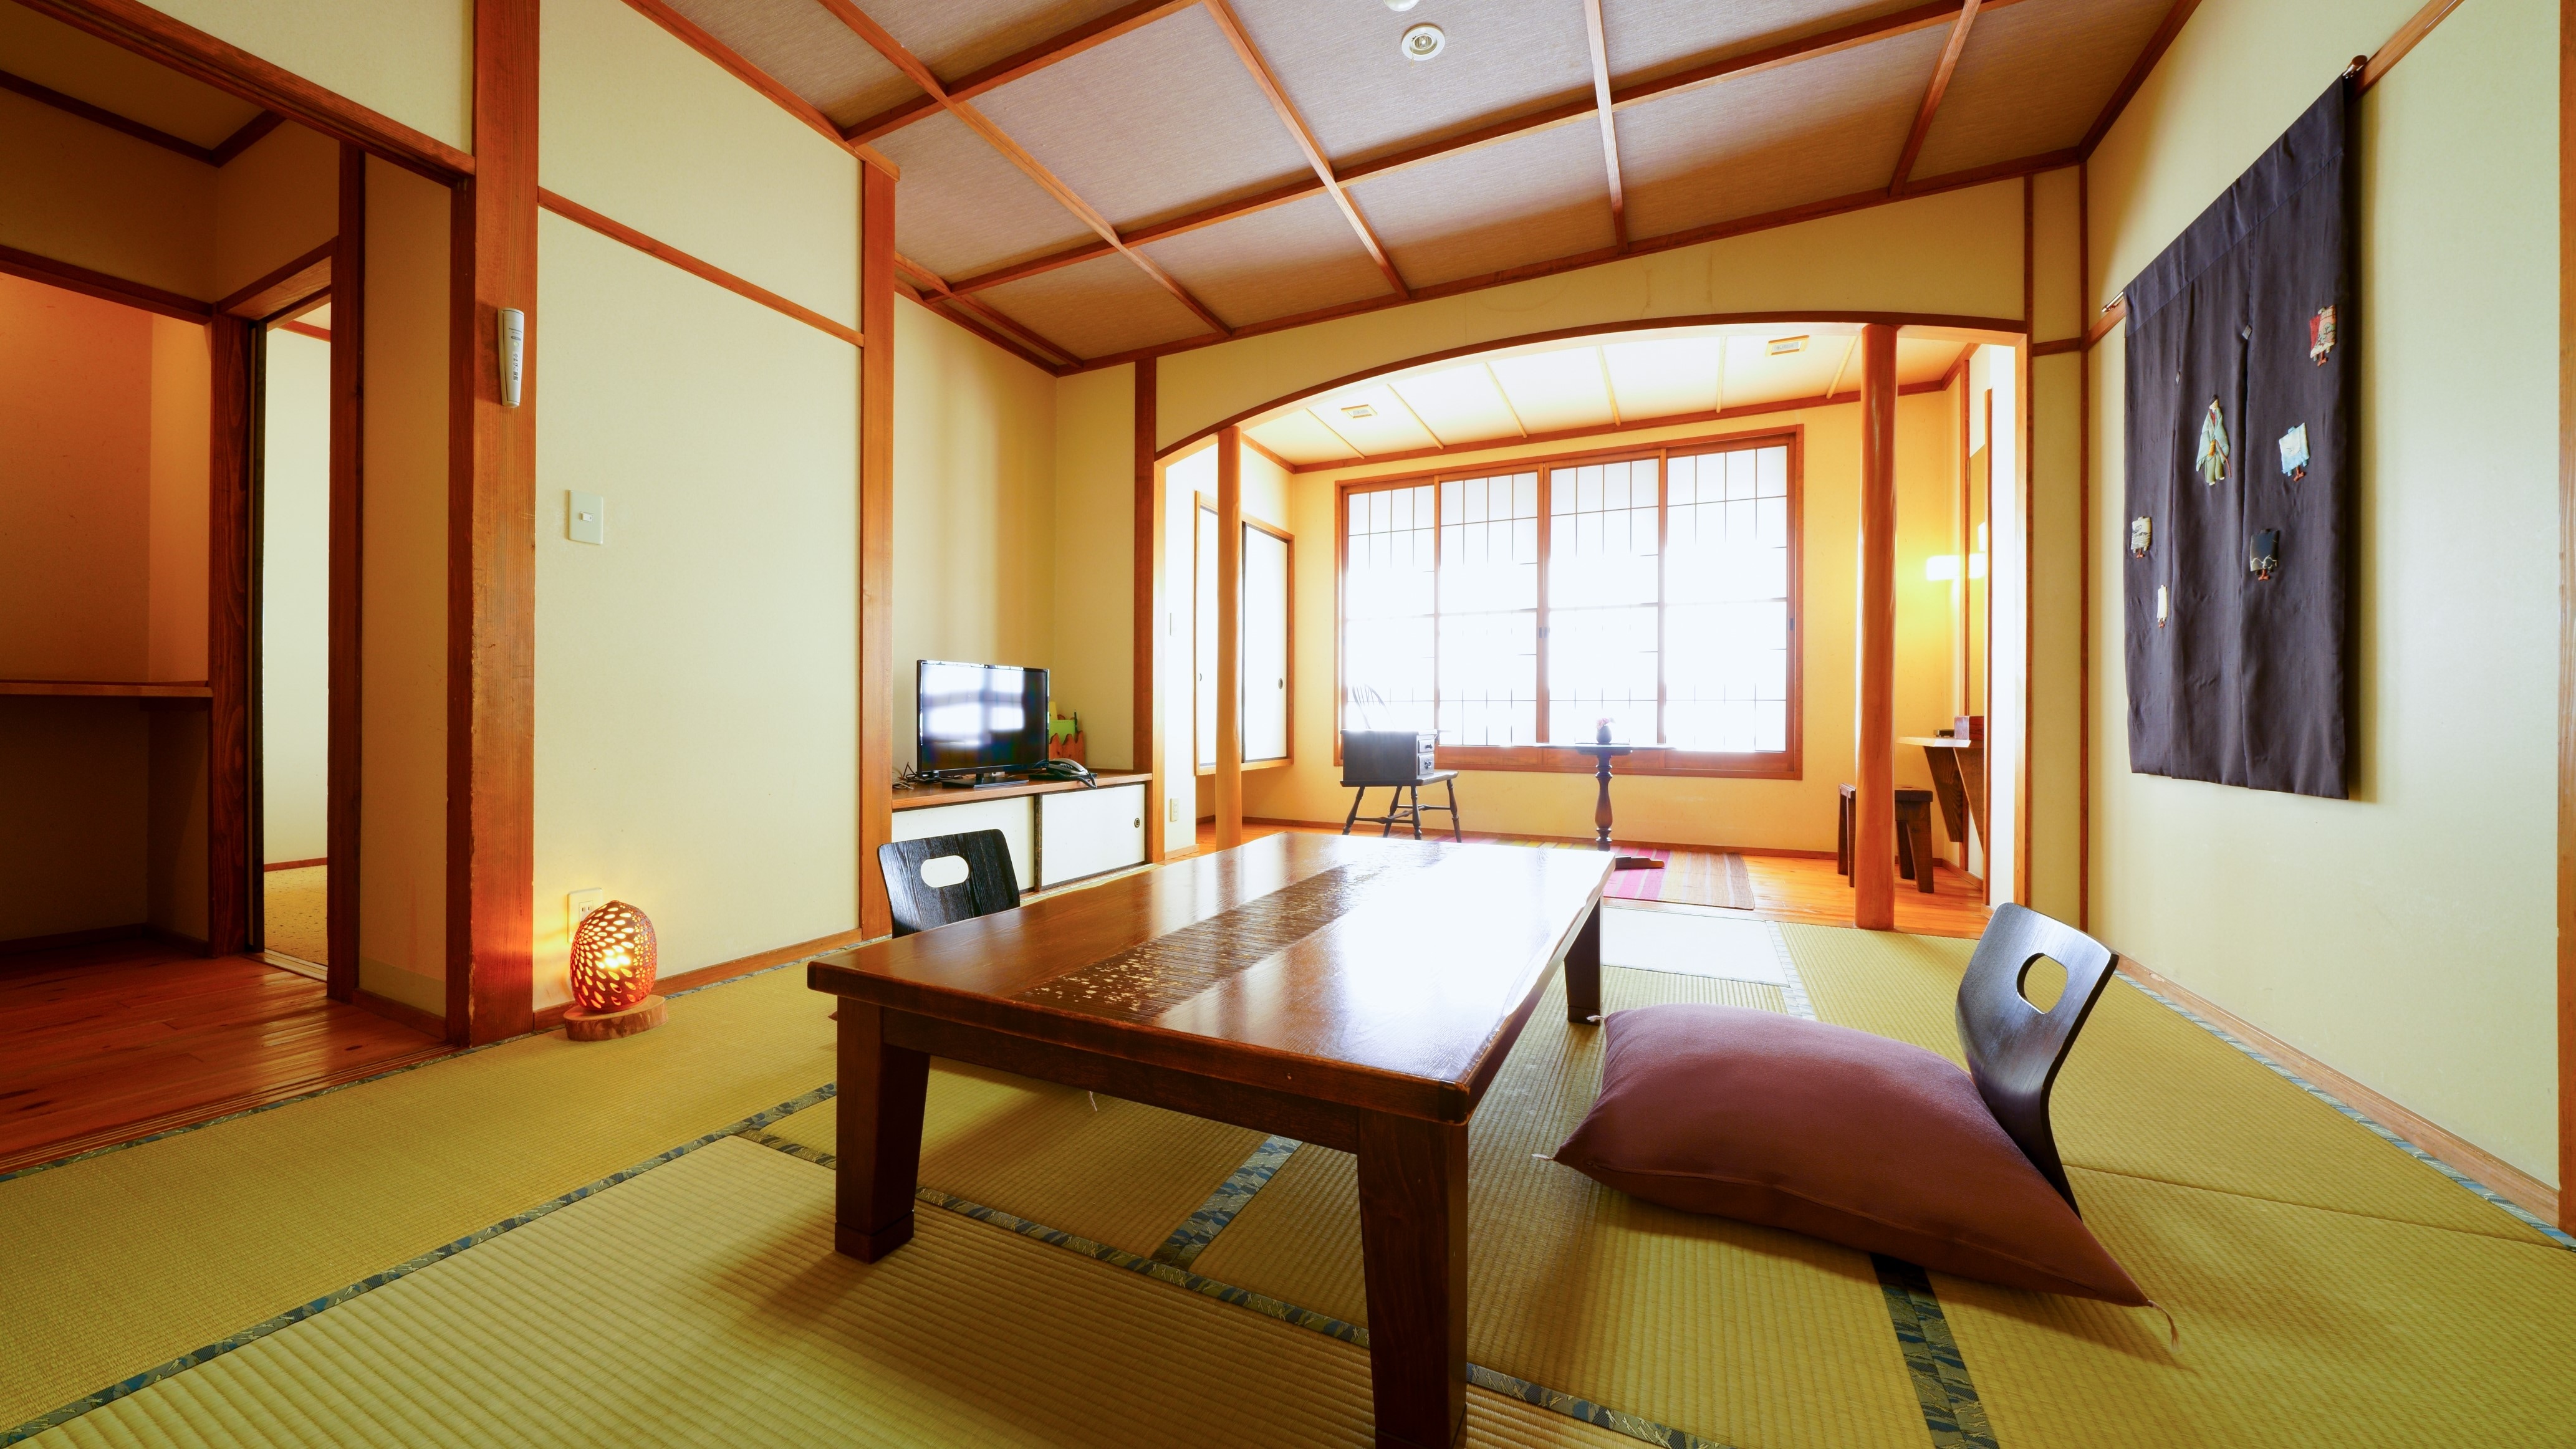 Kamar bergaya barat dan kamar bergaya Jepang dipisahkan ・ Gedung utama lantai 2 "Kamar bergaya Jepang-Barat"